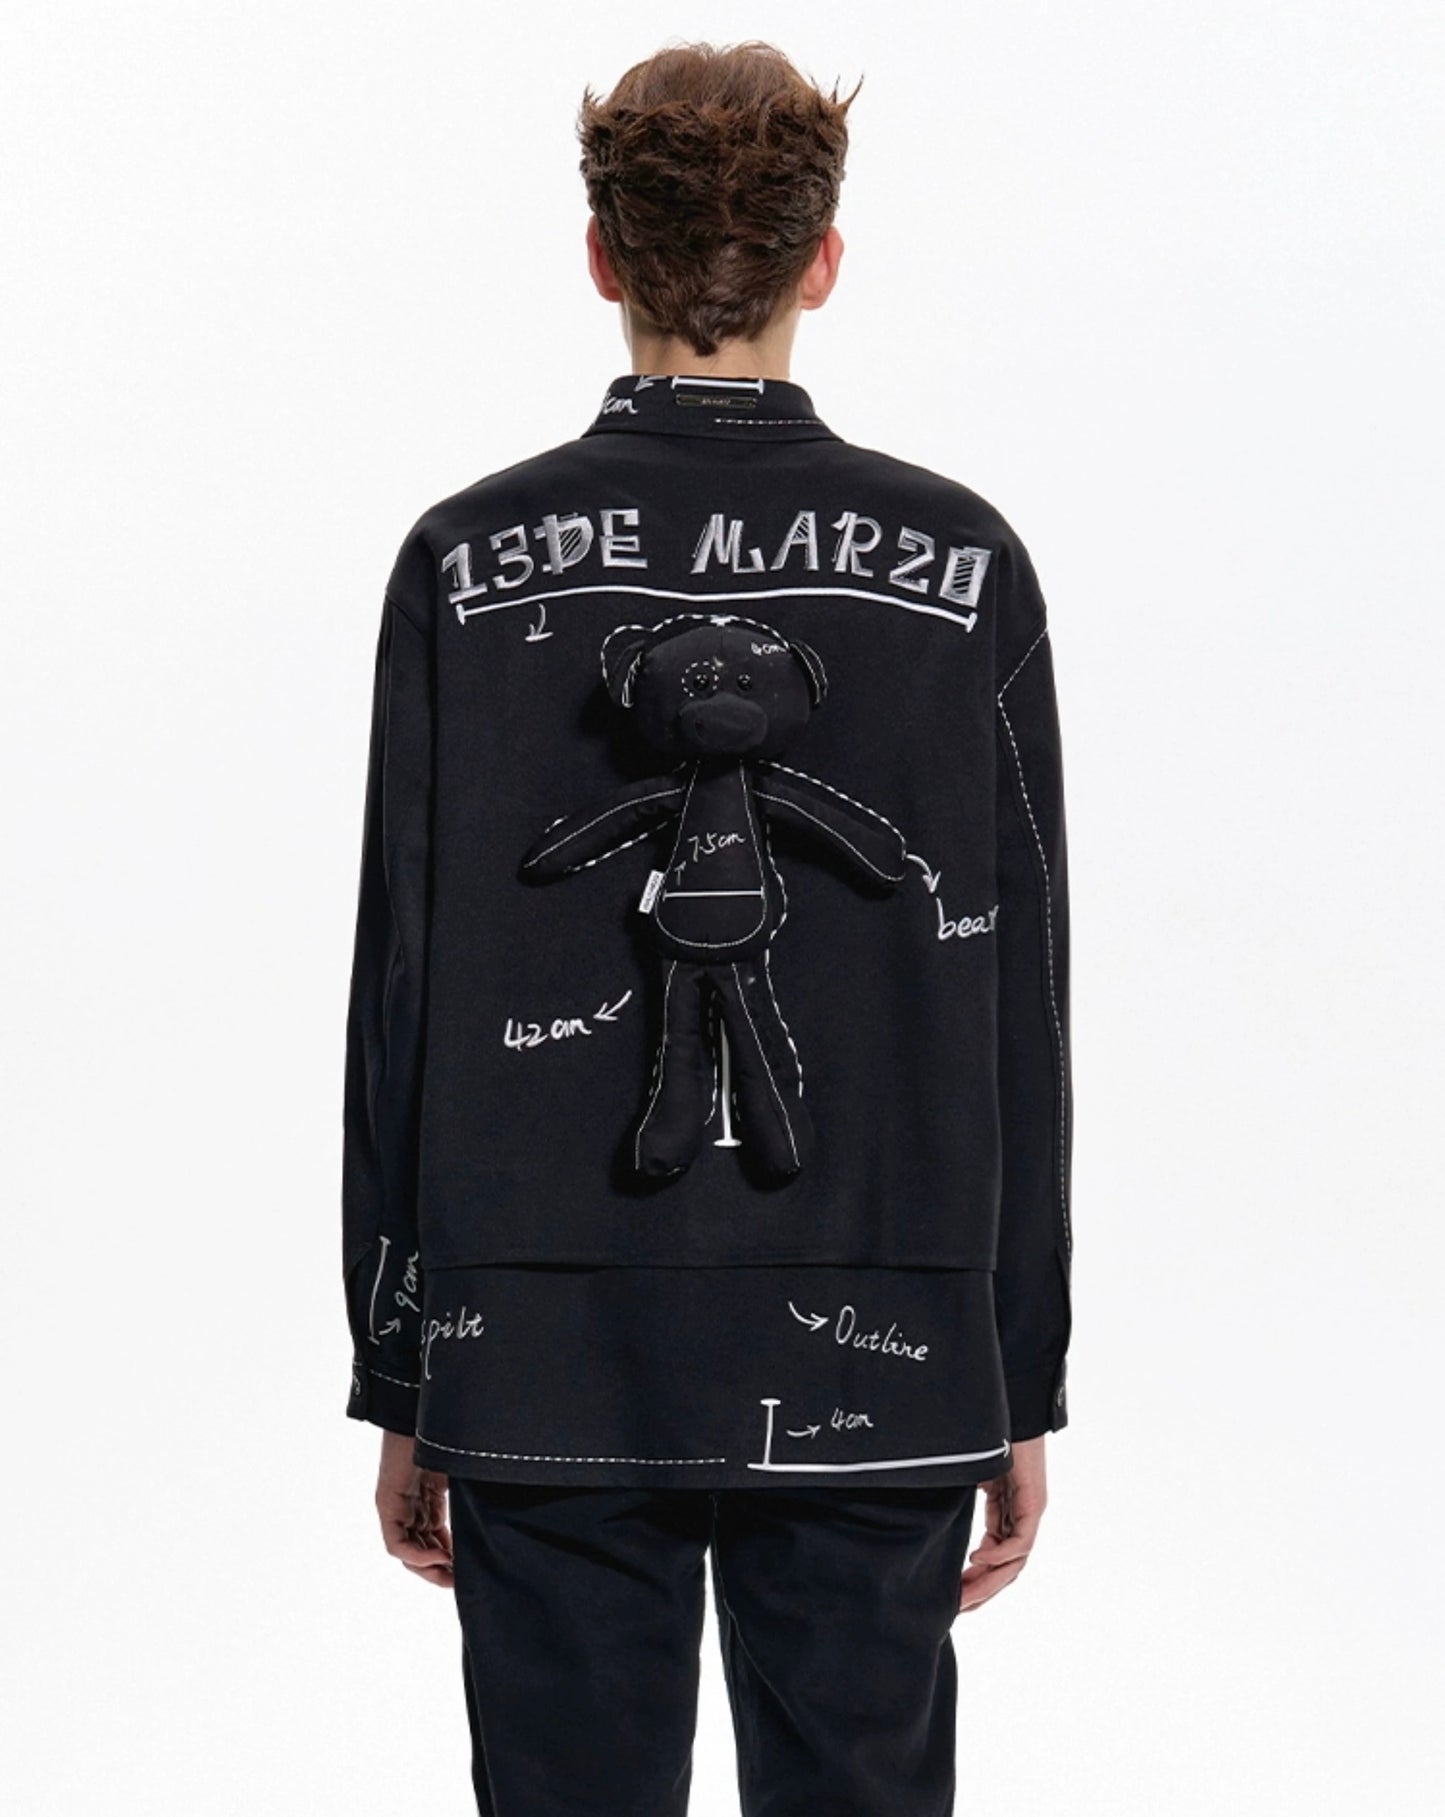 13DE MARZO Sketch Line Shirt Black